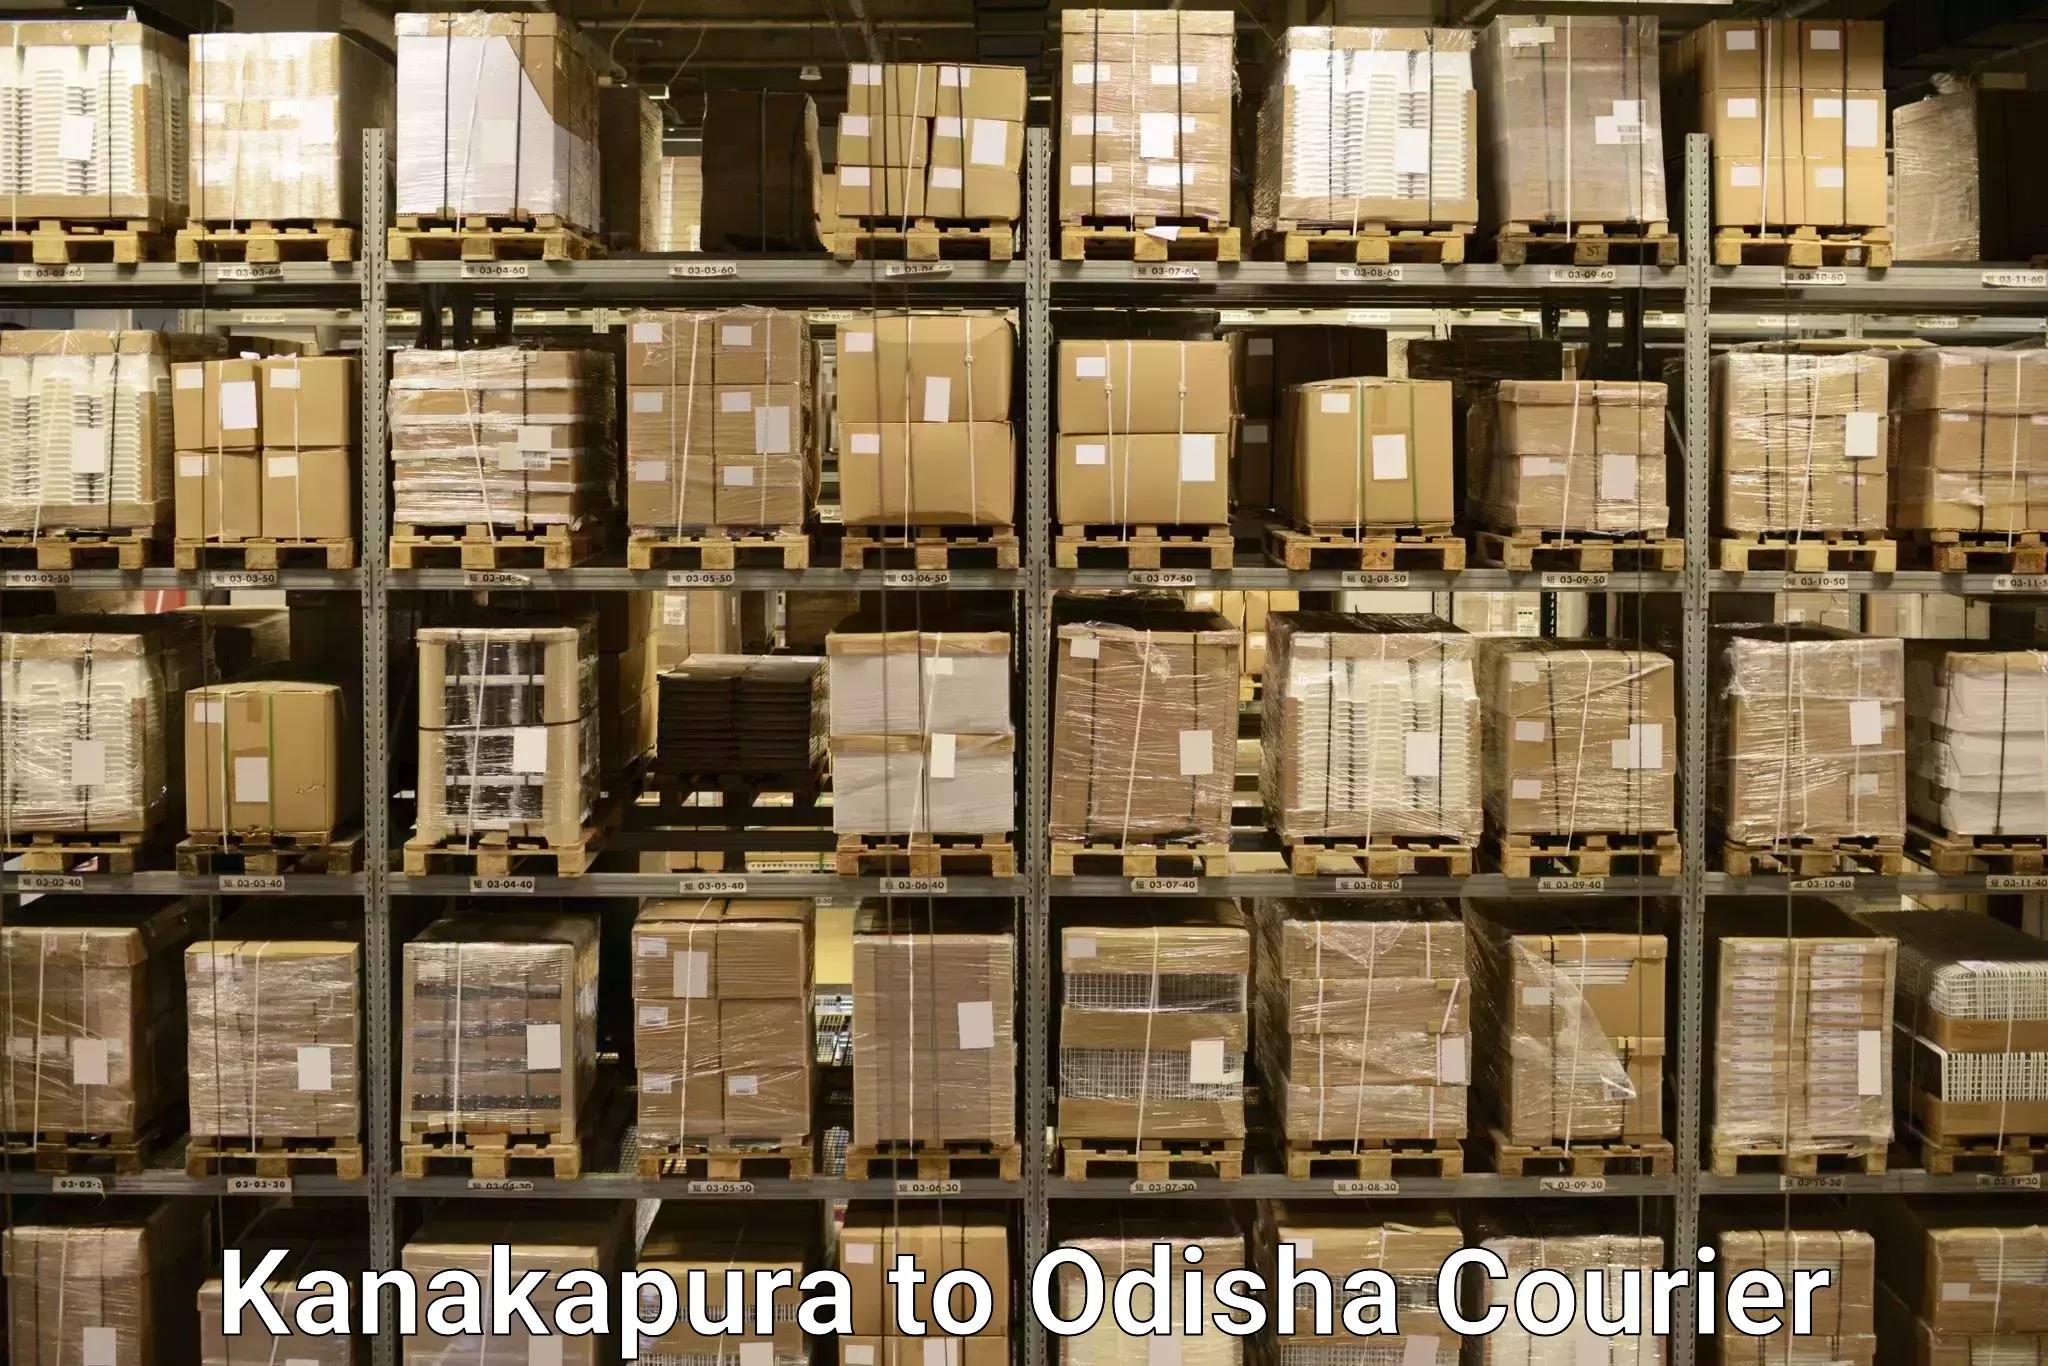 Luggage transport consultancy Kanakapura to Parmanpur